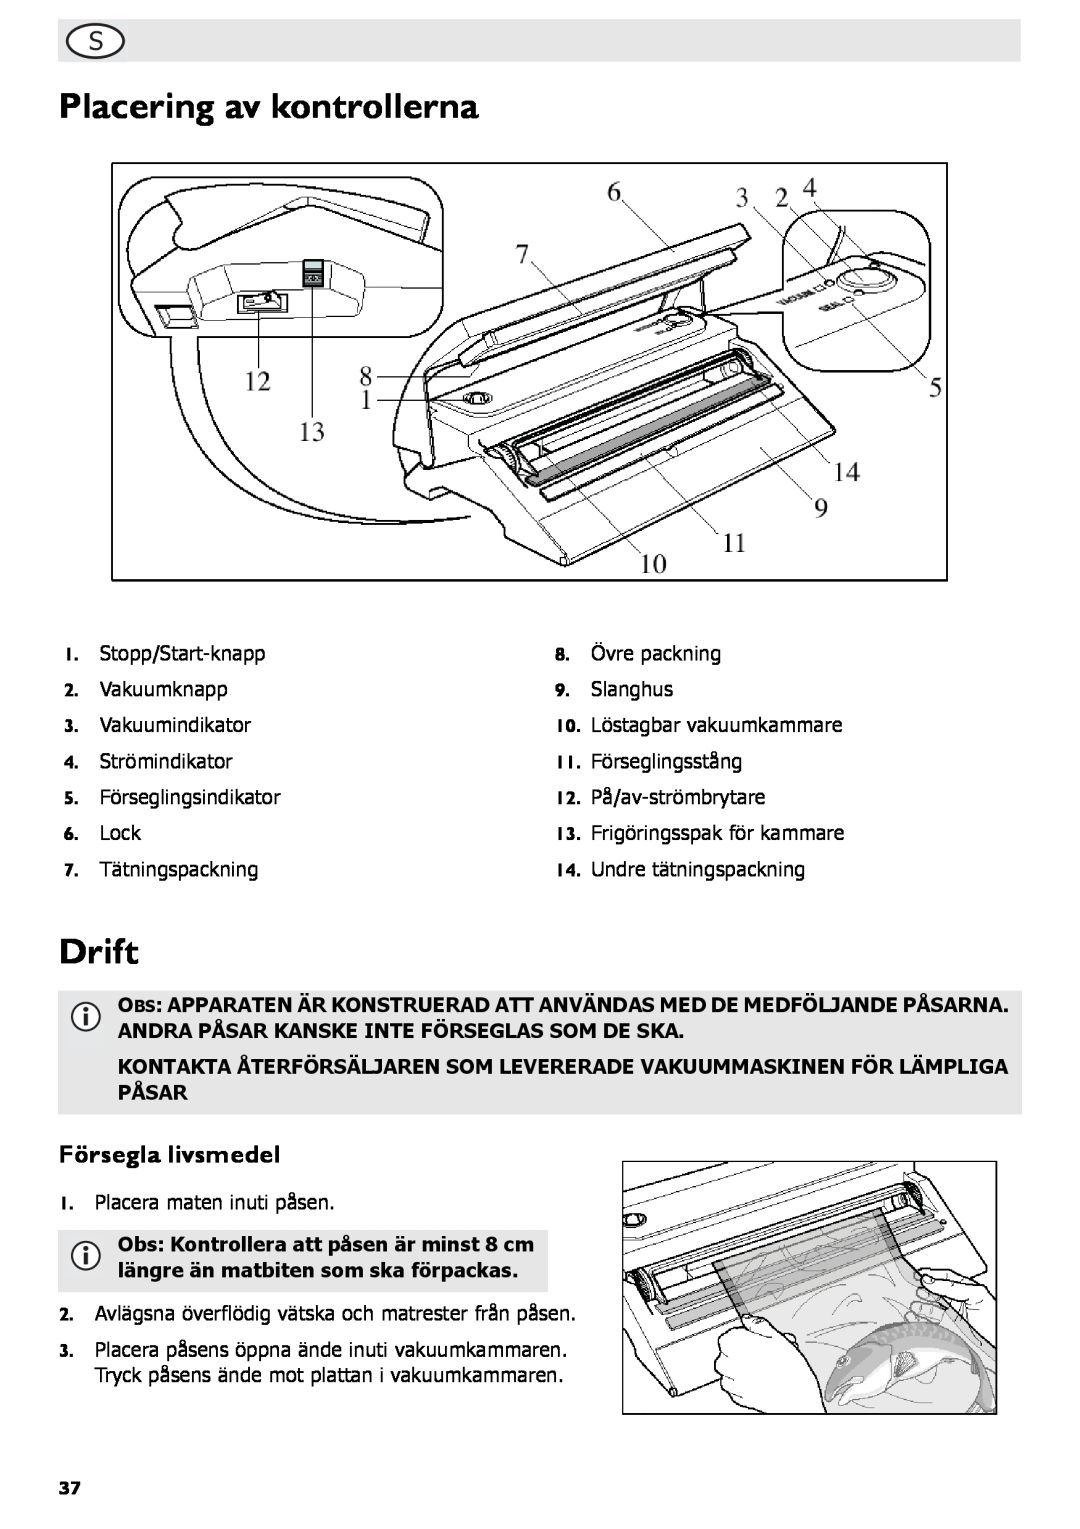 Buffalo Tools S097 instruction manual Placering av kontrollerna, Drift, Försegla livsmedel 